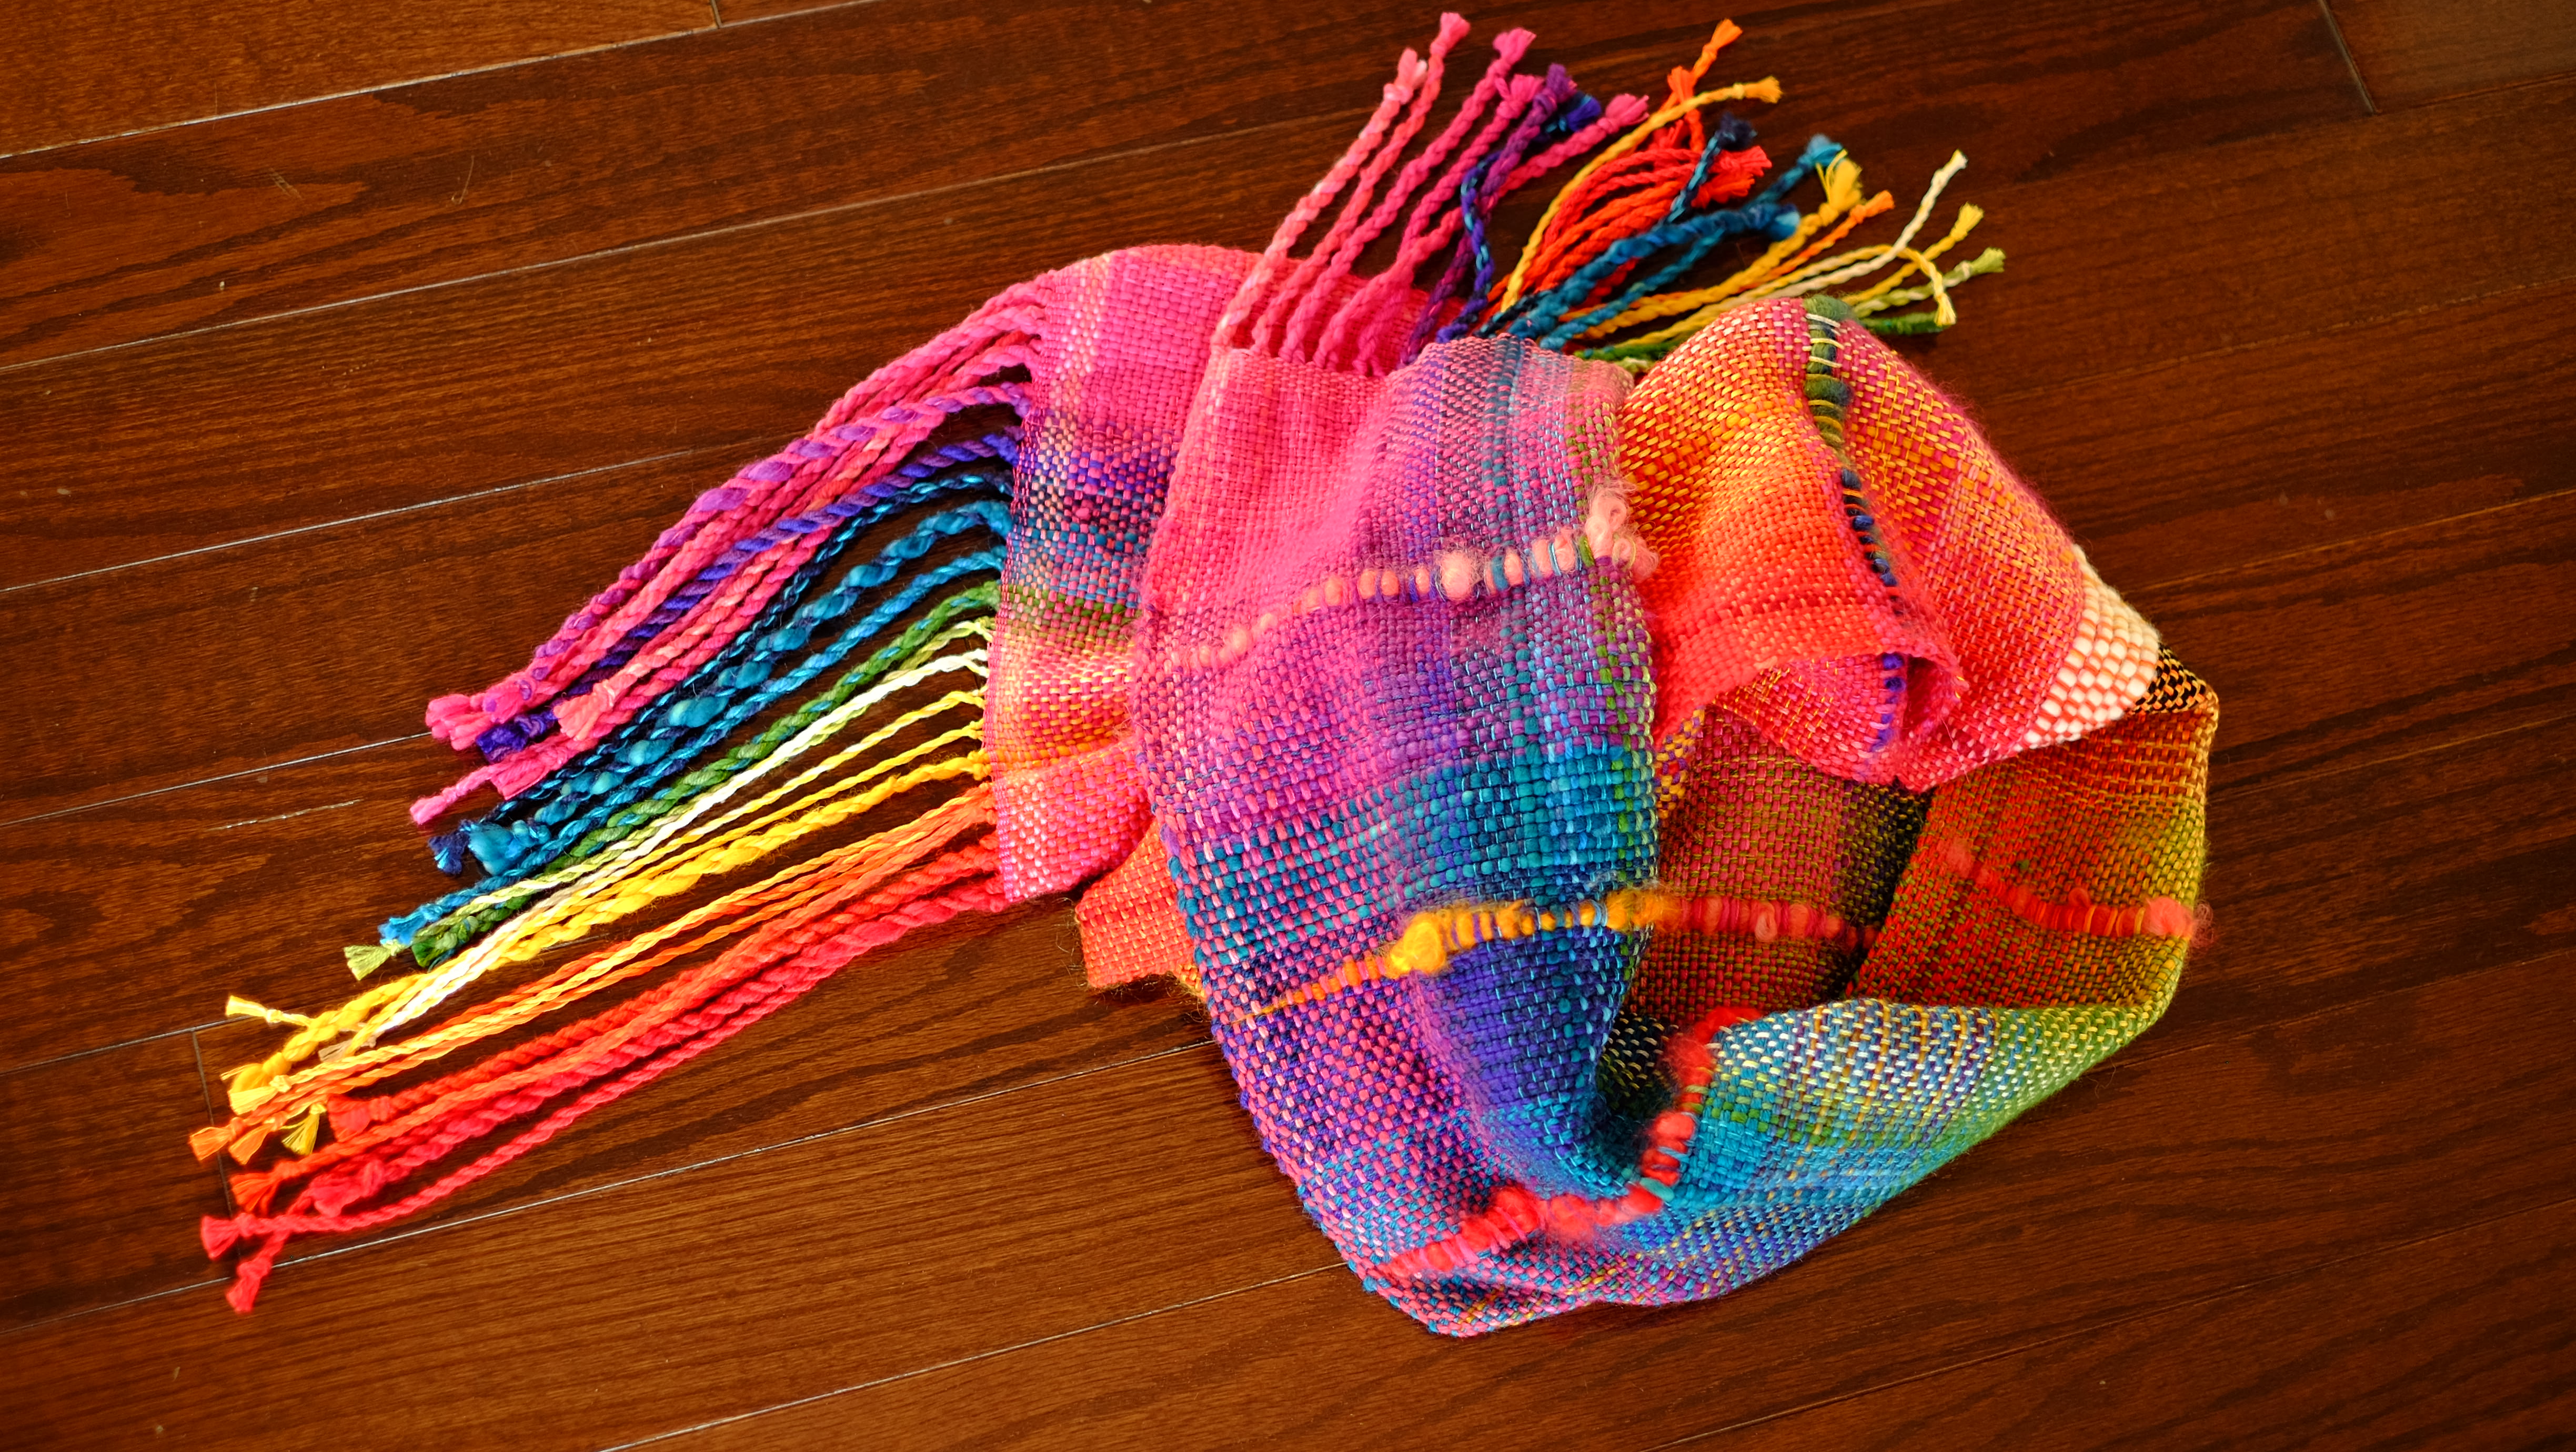 虹織りアート作品です/Rainbow Weaving Art